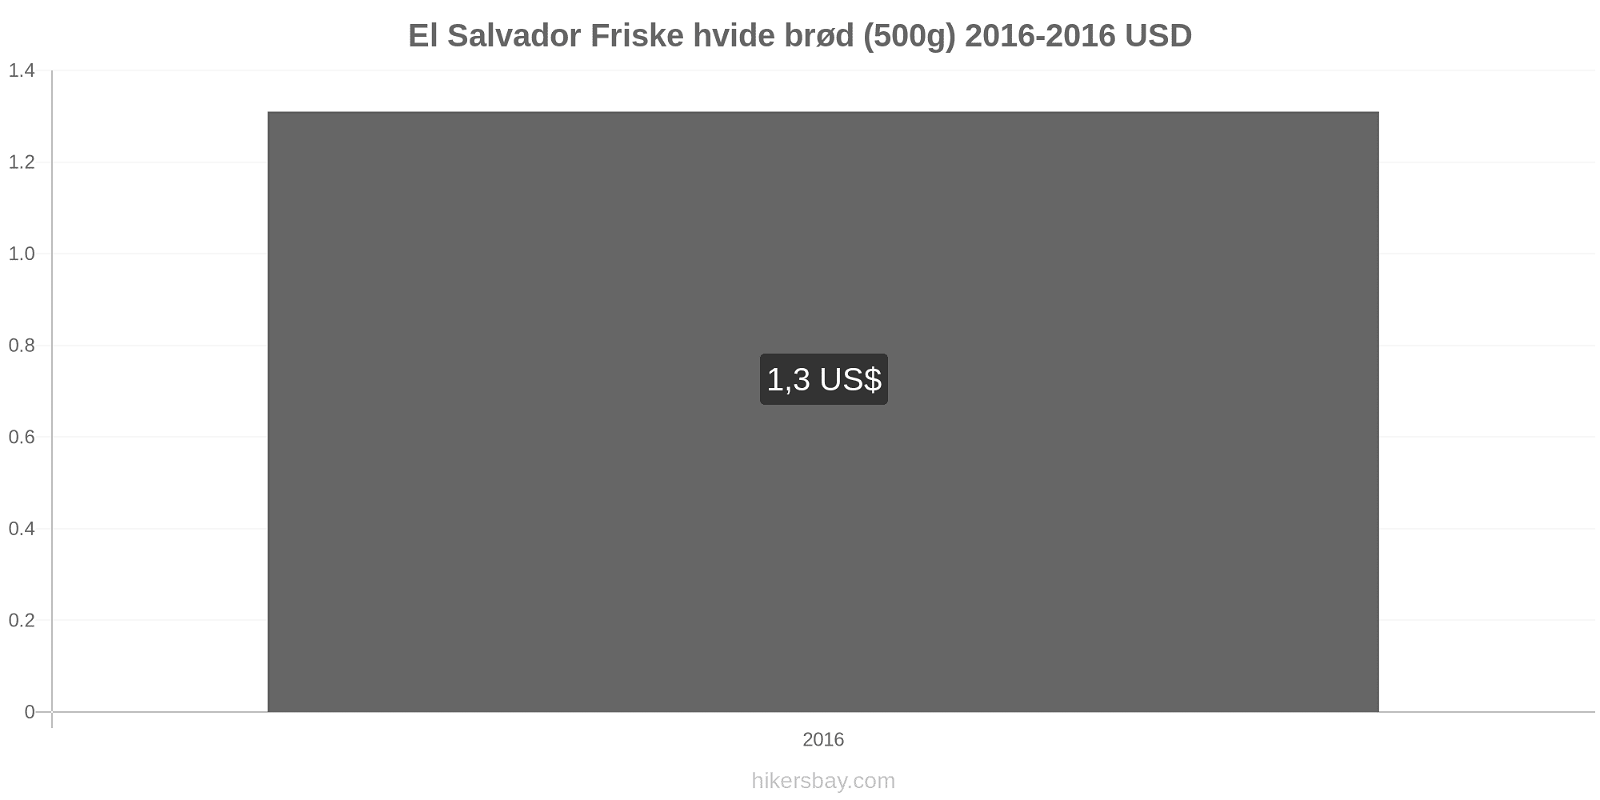 El Salvador prisændringer Friske hvide brød (500g) hikersbay.com